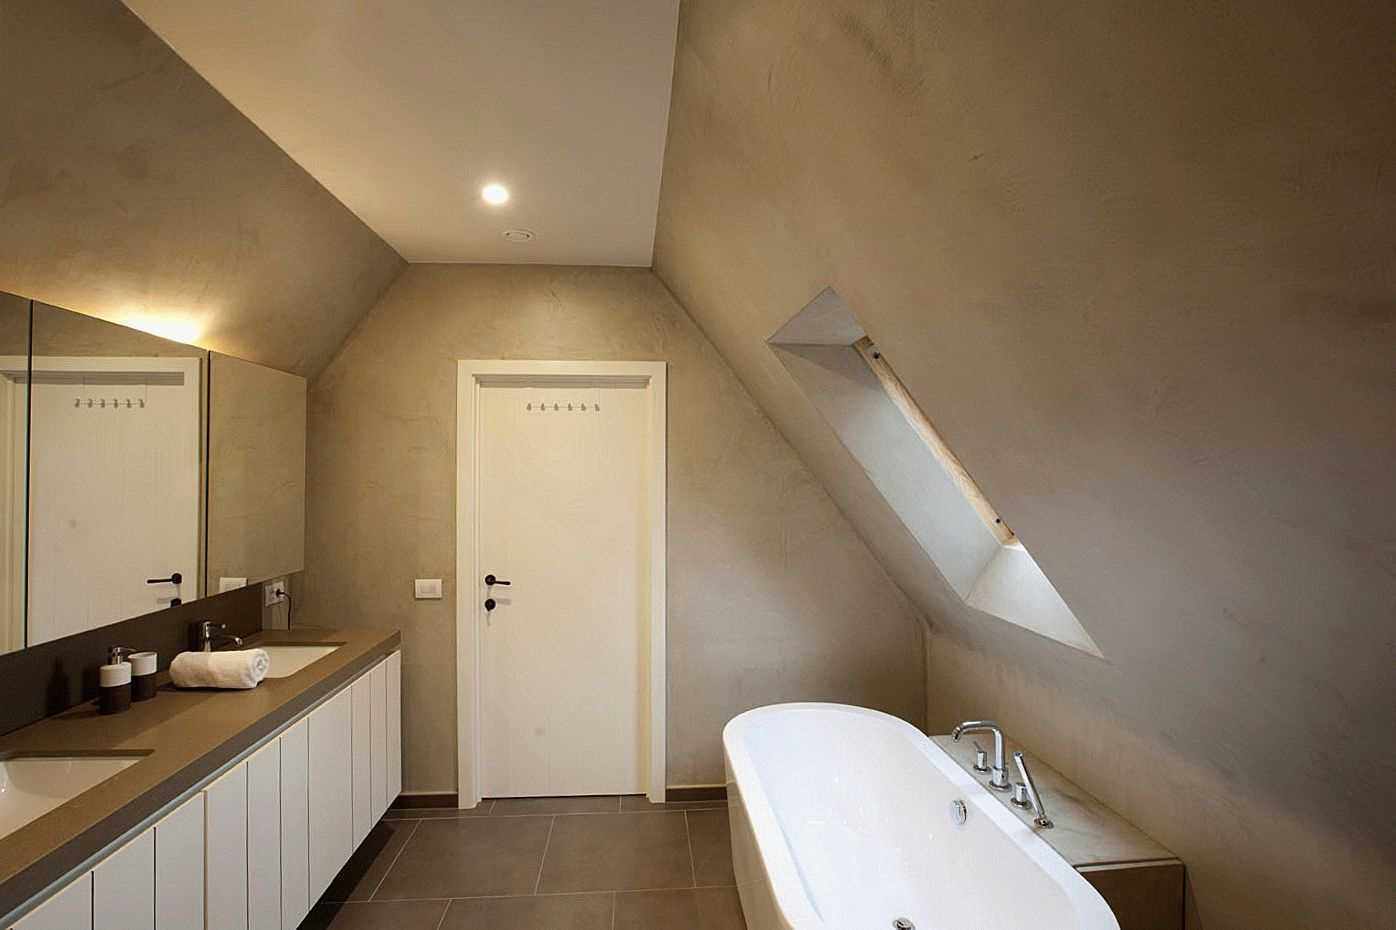 דוגמא לשימוש בטיח דקורטיבי יפהפה בעיצוב אמבטיה